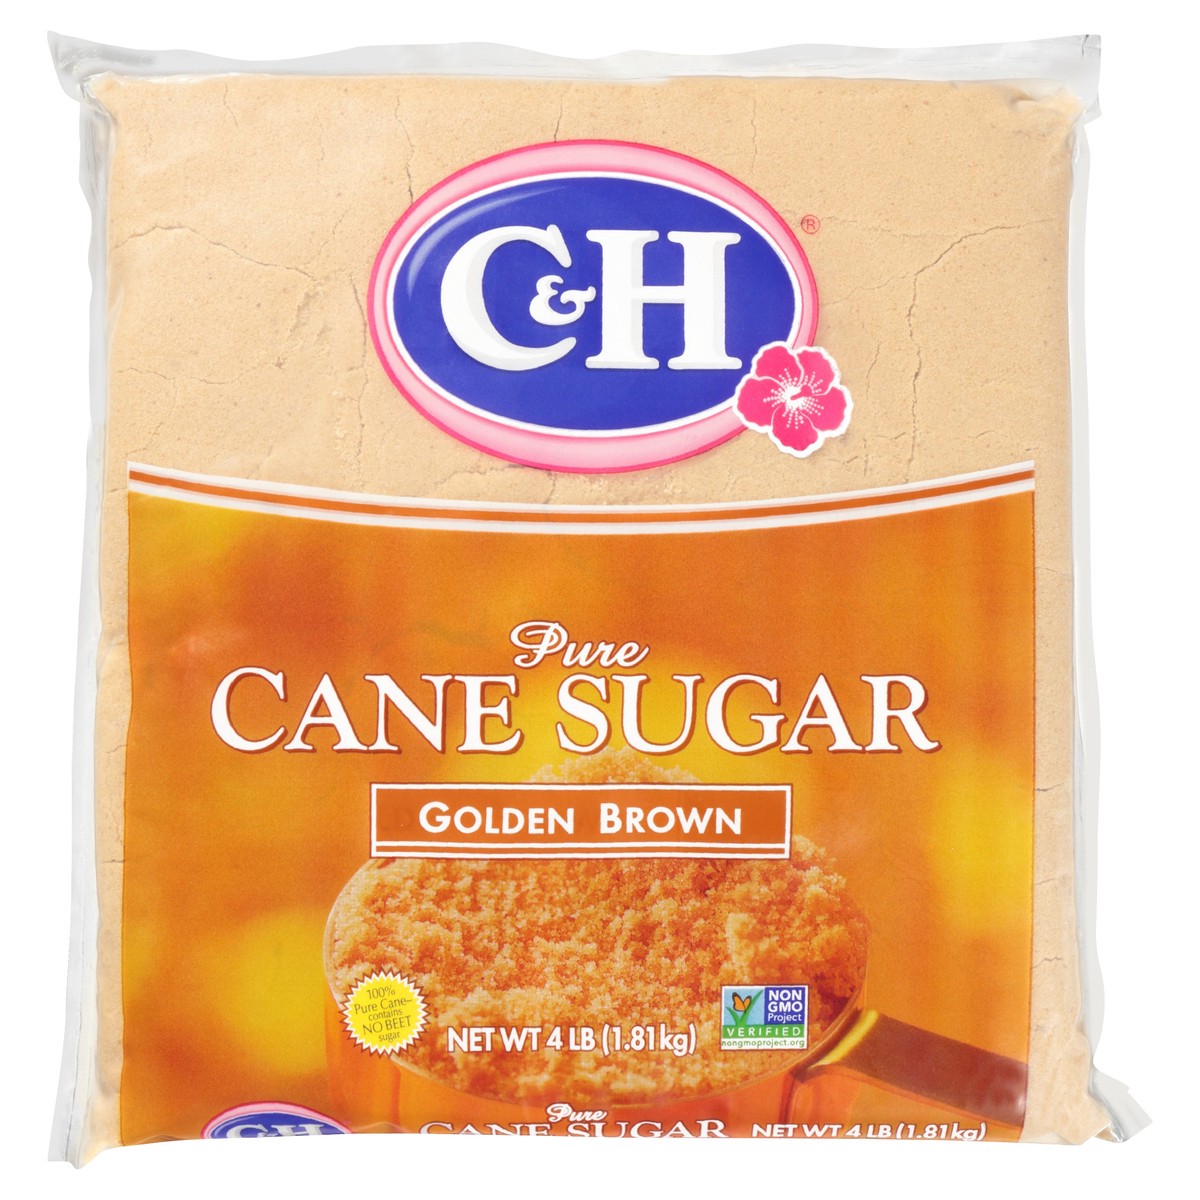 slide 1 of 11, C&H Pure Cane Sugar Golden Brown, 4 lb